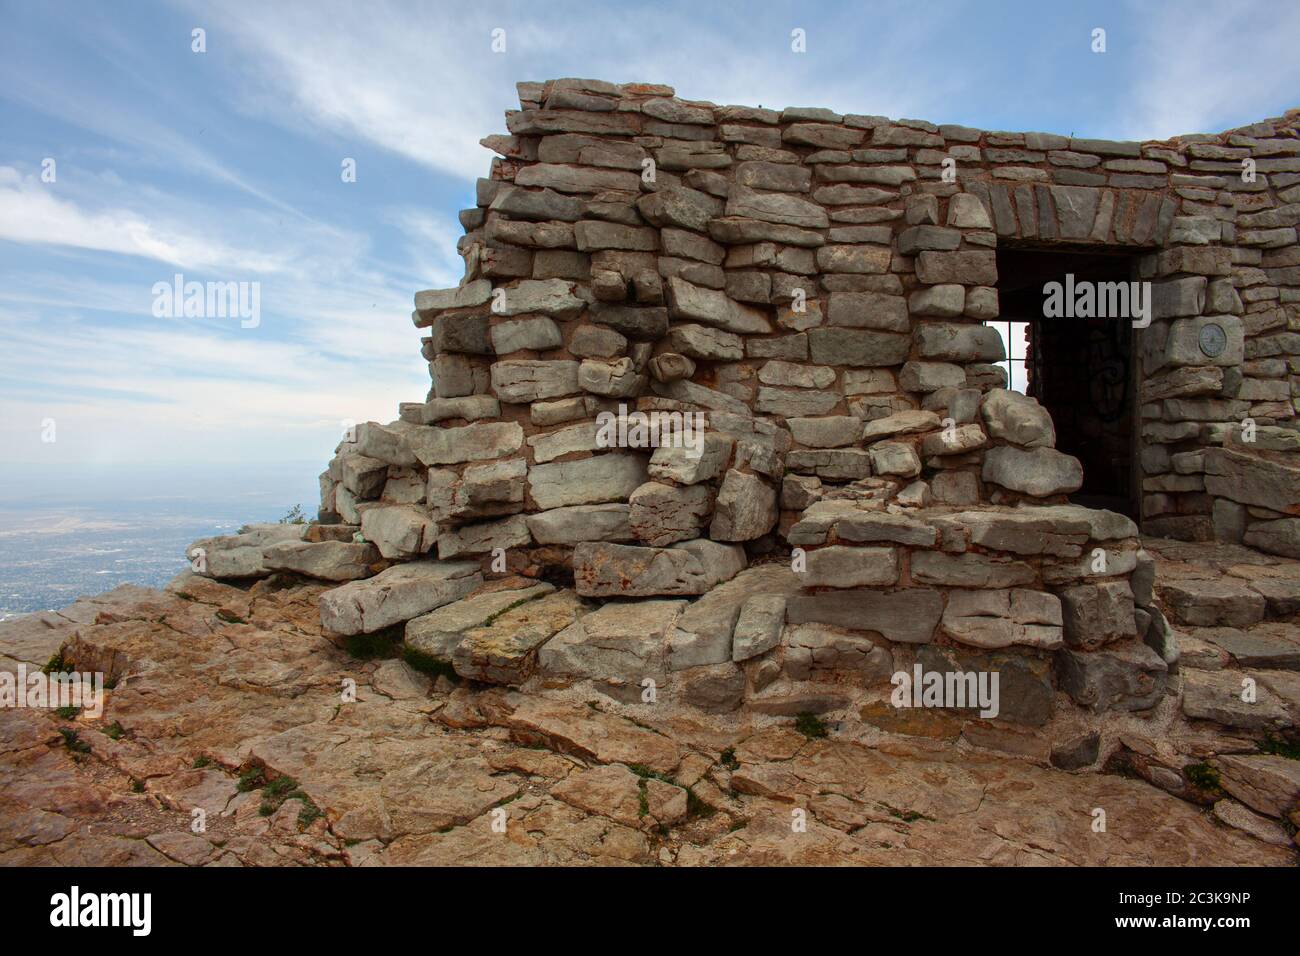 Ruines en pierre de la cabine Kiwanis sur le Sandia Crest dans les montagnes Sandia à l'extérieur d'Albuquerque, Nouveau-Mexique Banque D'Images